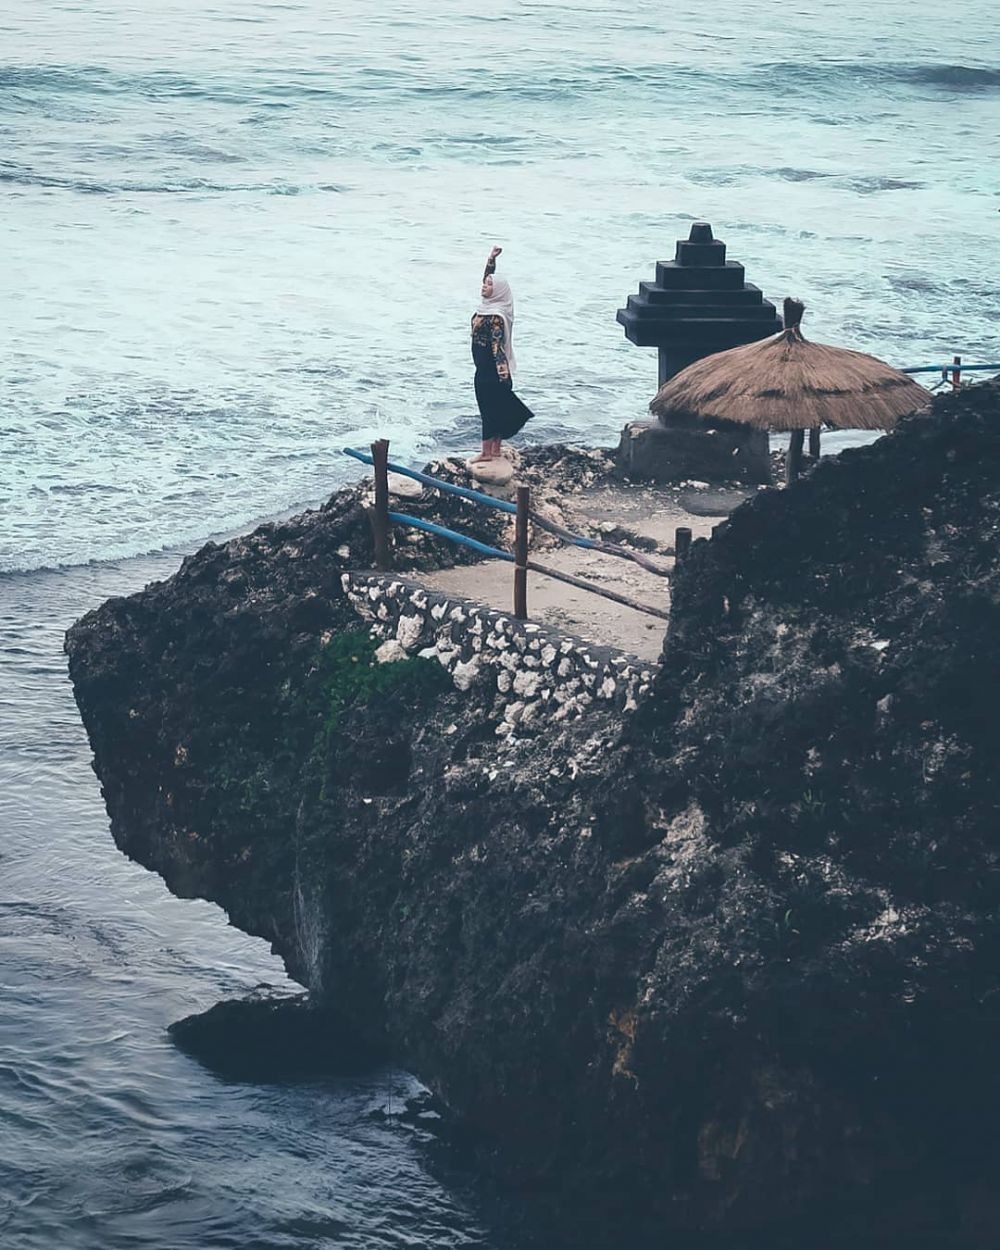 Warga Jakarta Tidak Harus Liburan Ke Bali ! Kunjungi 8 Wisata Pantai Jawa Yang Mirip Pulau Dewata Ini 4